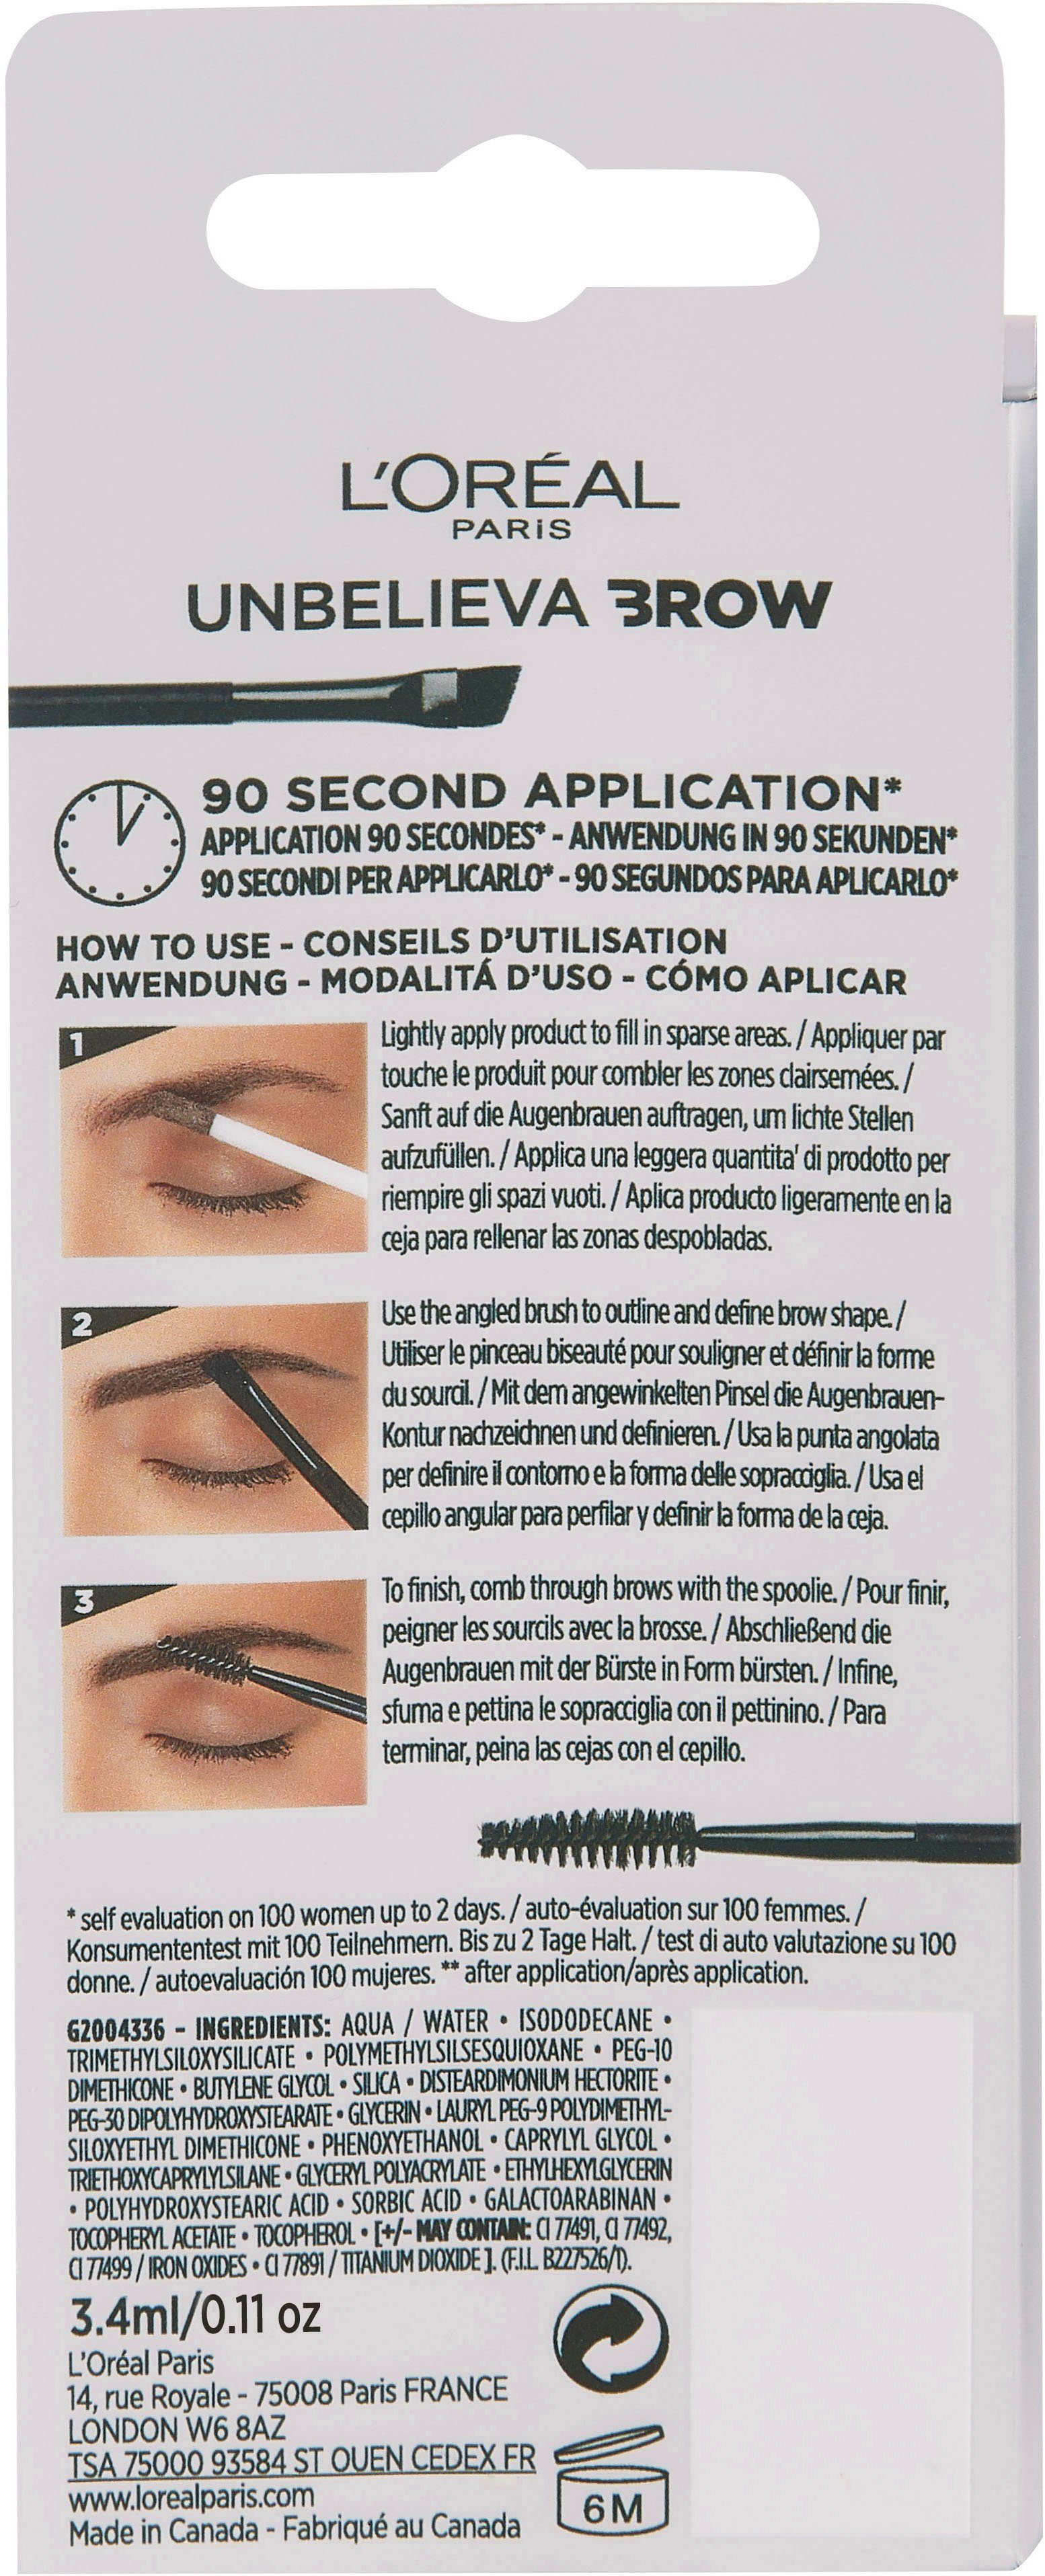 L'ORÉAL PARIS Augenbrauen-Gel Unbelieva 3.0 Augen-Make-Up Brunette mit wischfest, unterschiedlichen Brow, Applikatoren